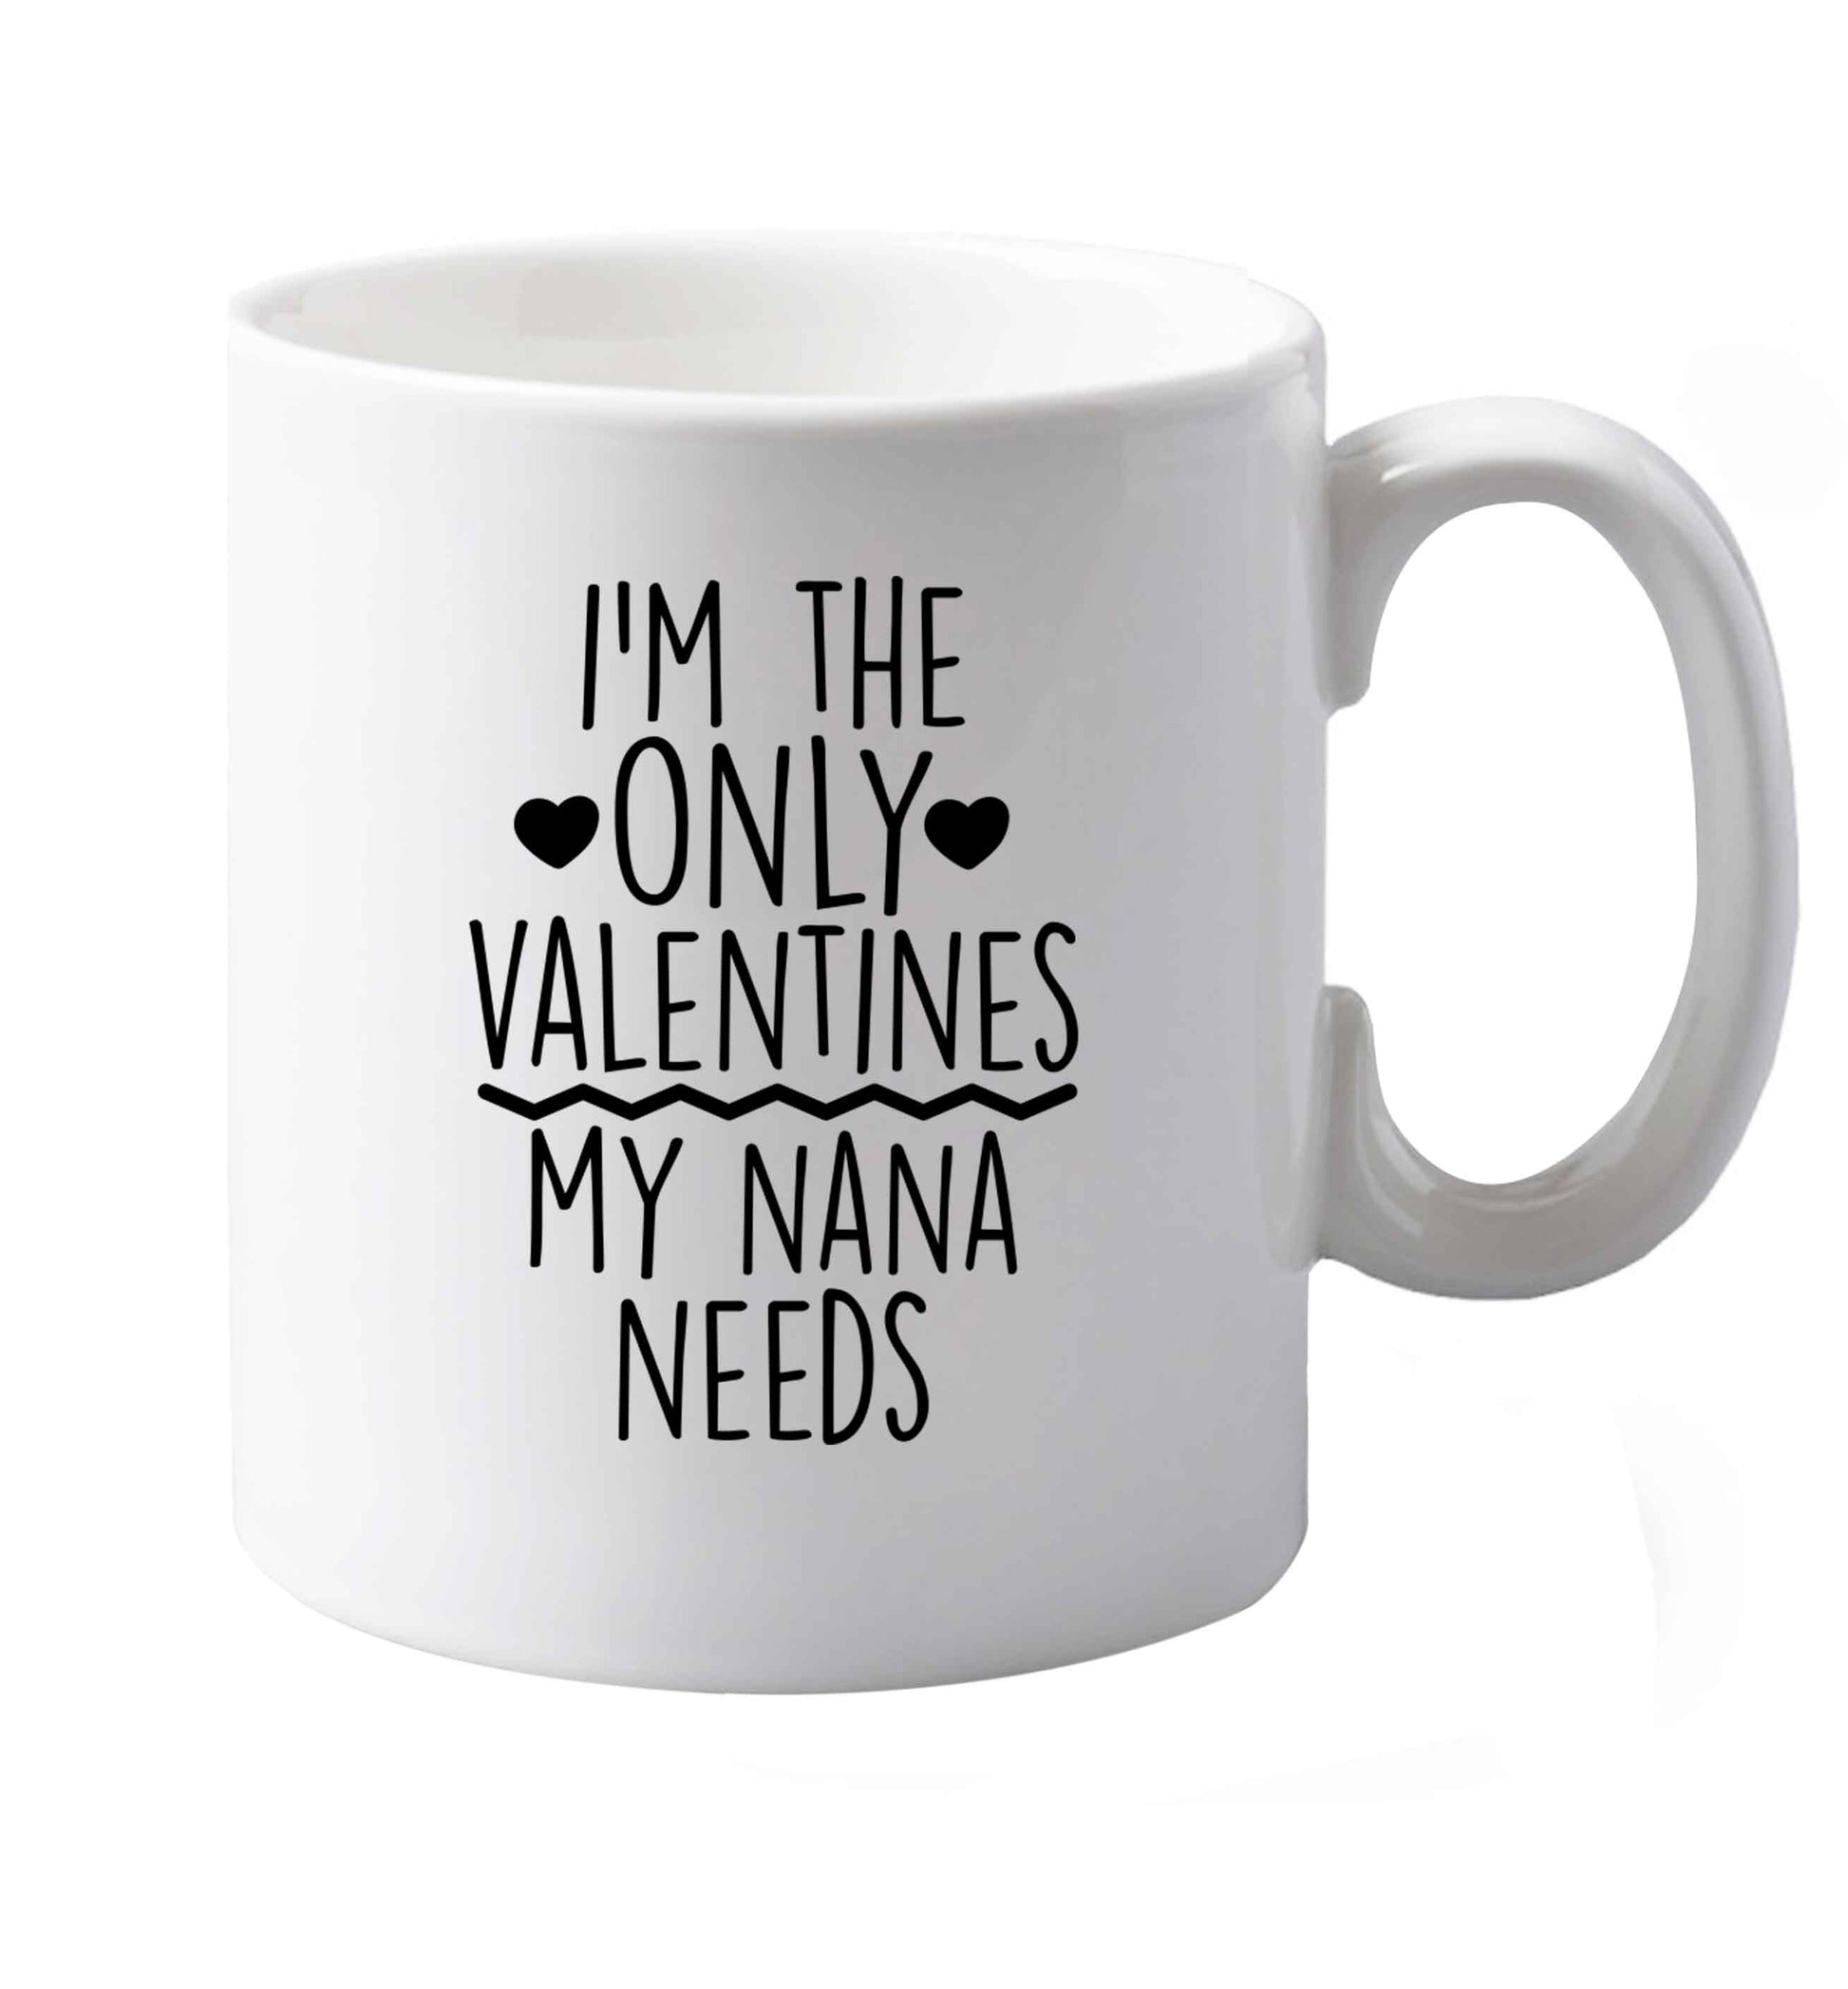 10 oz I'm the only valentines my nana needs ceramic mug both sides